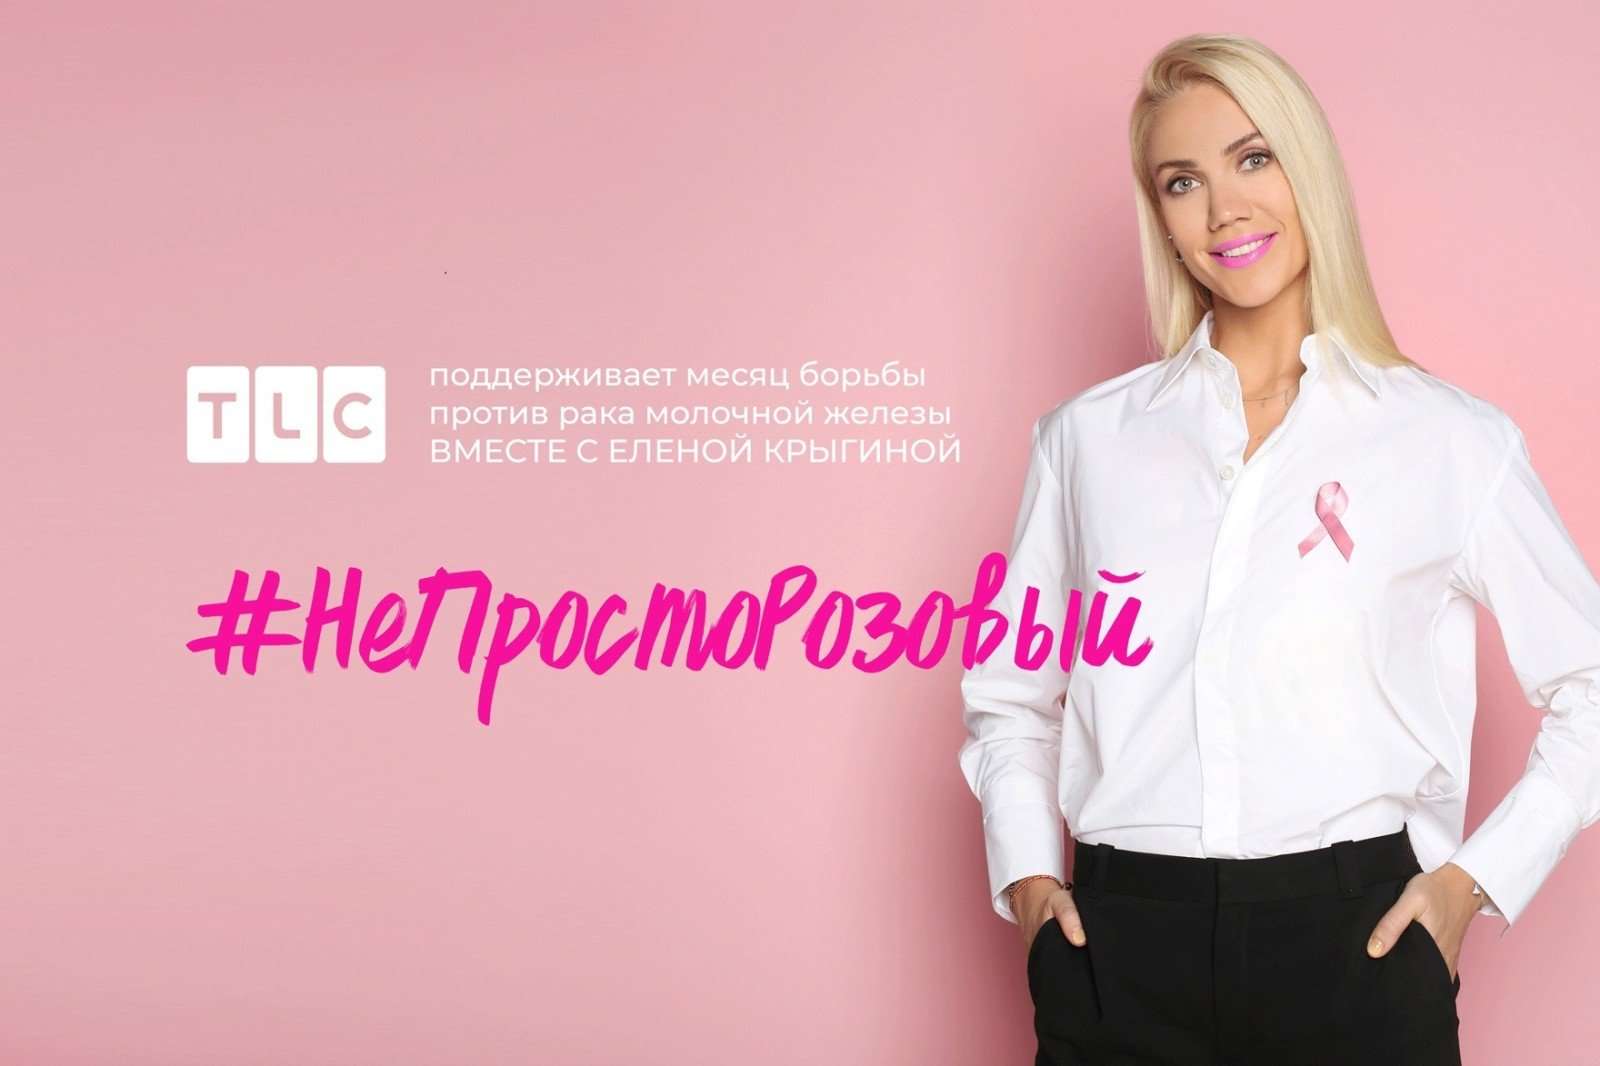 НеПростоРозовый: Елена Крыгина запустила в соцсетях флешмоб против рака груди